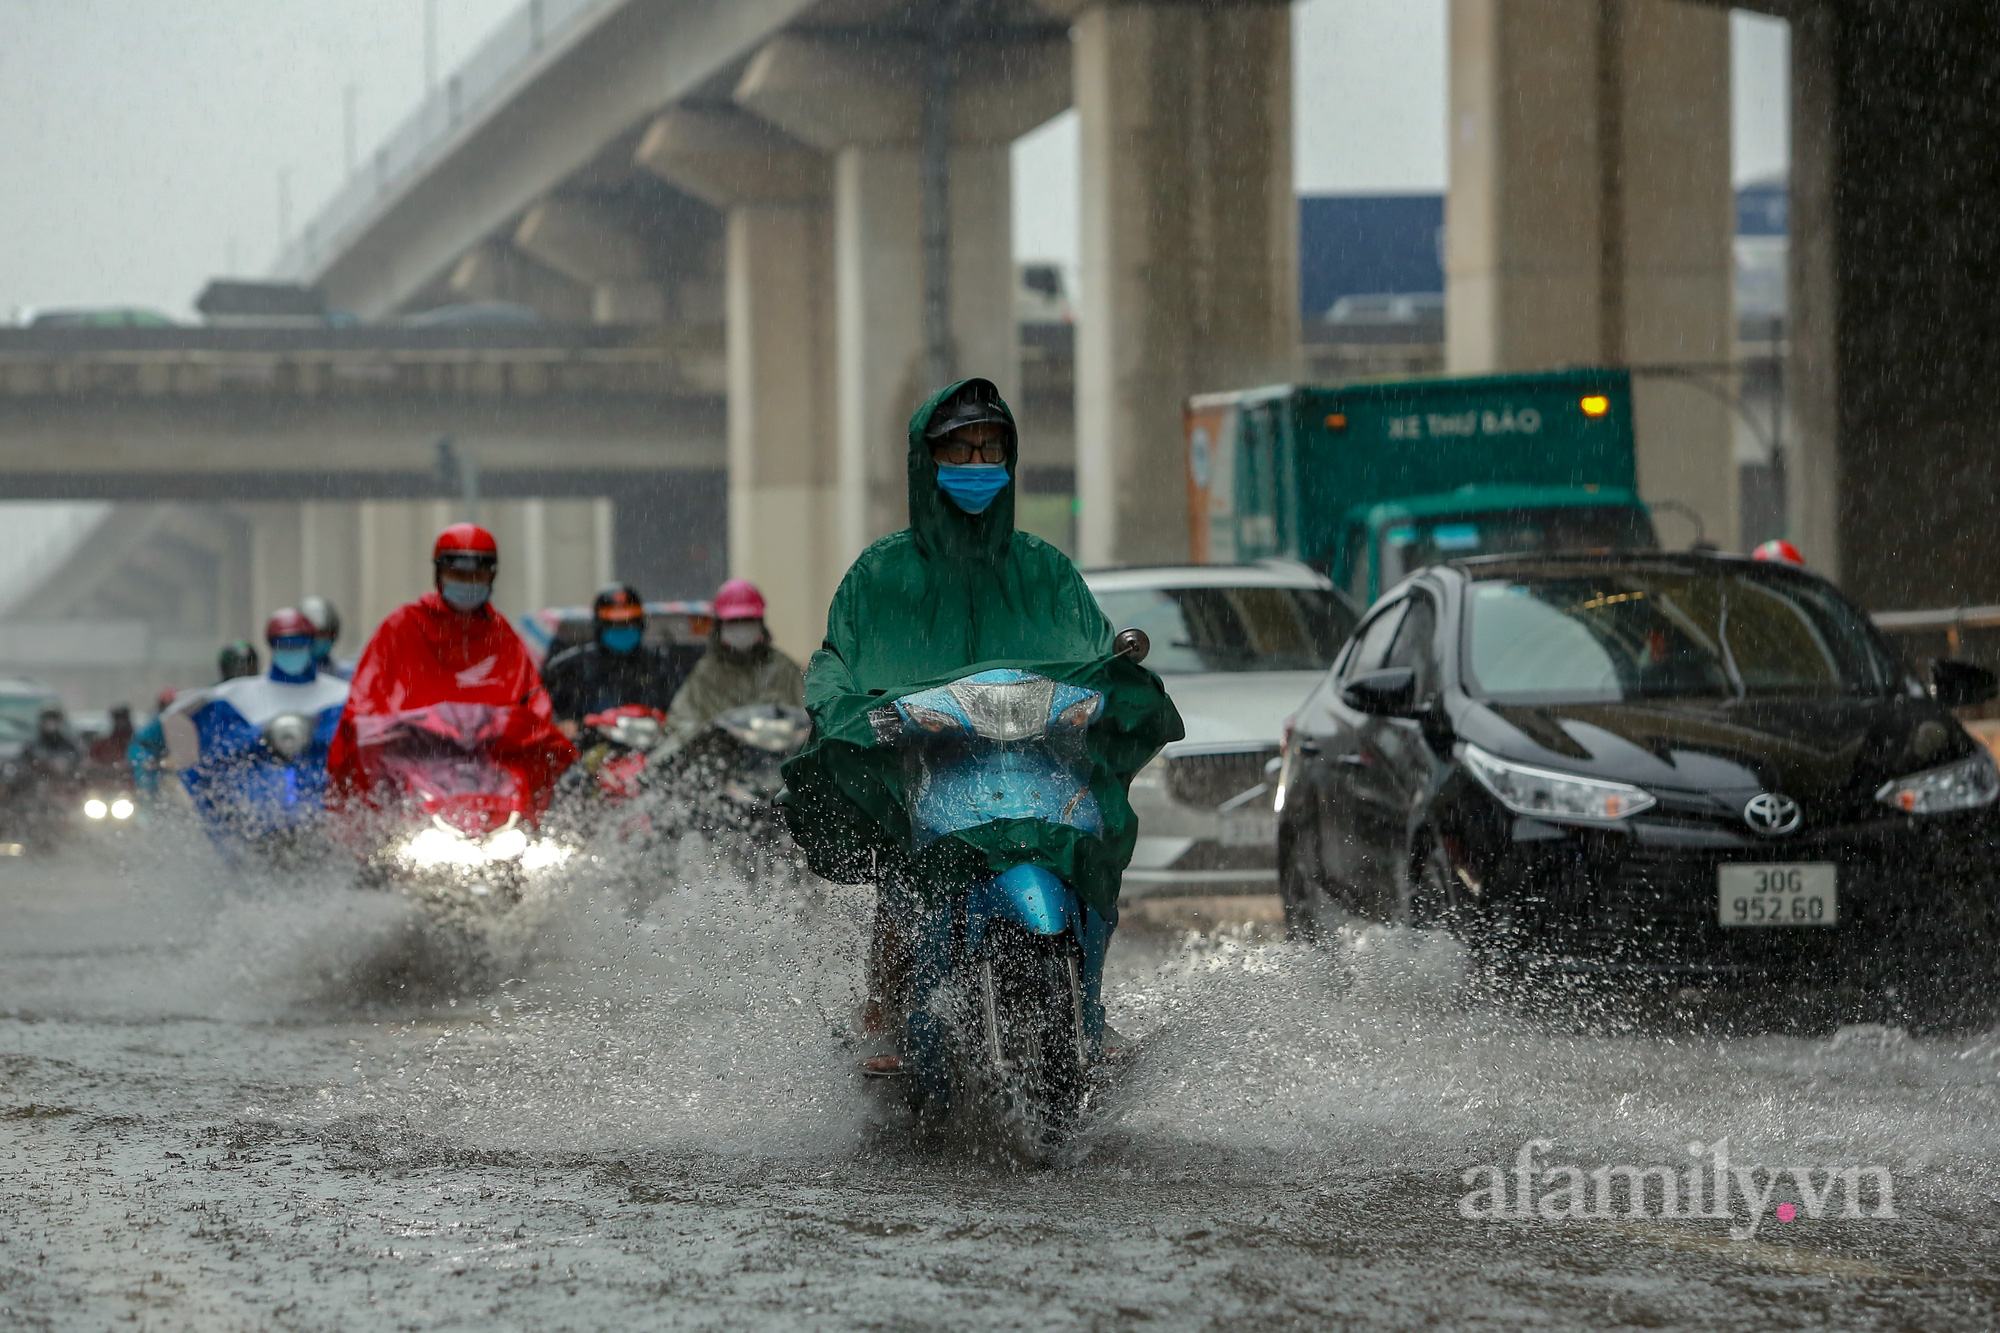 Đường phố ùn tắc, người Hà Nội vật lộn đi làm trong cơn mưa tầm tã - Ảnh 14.